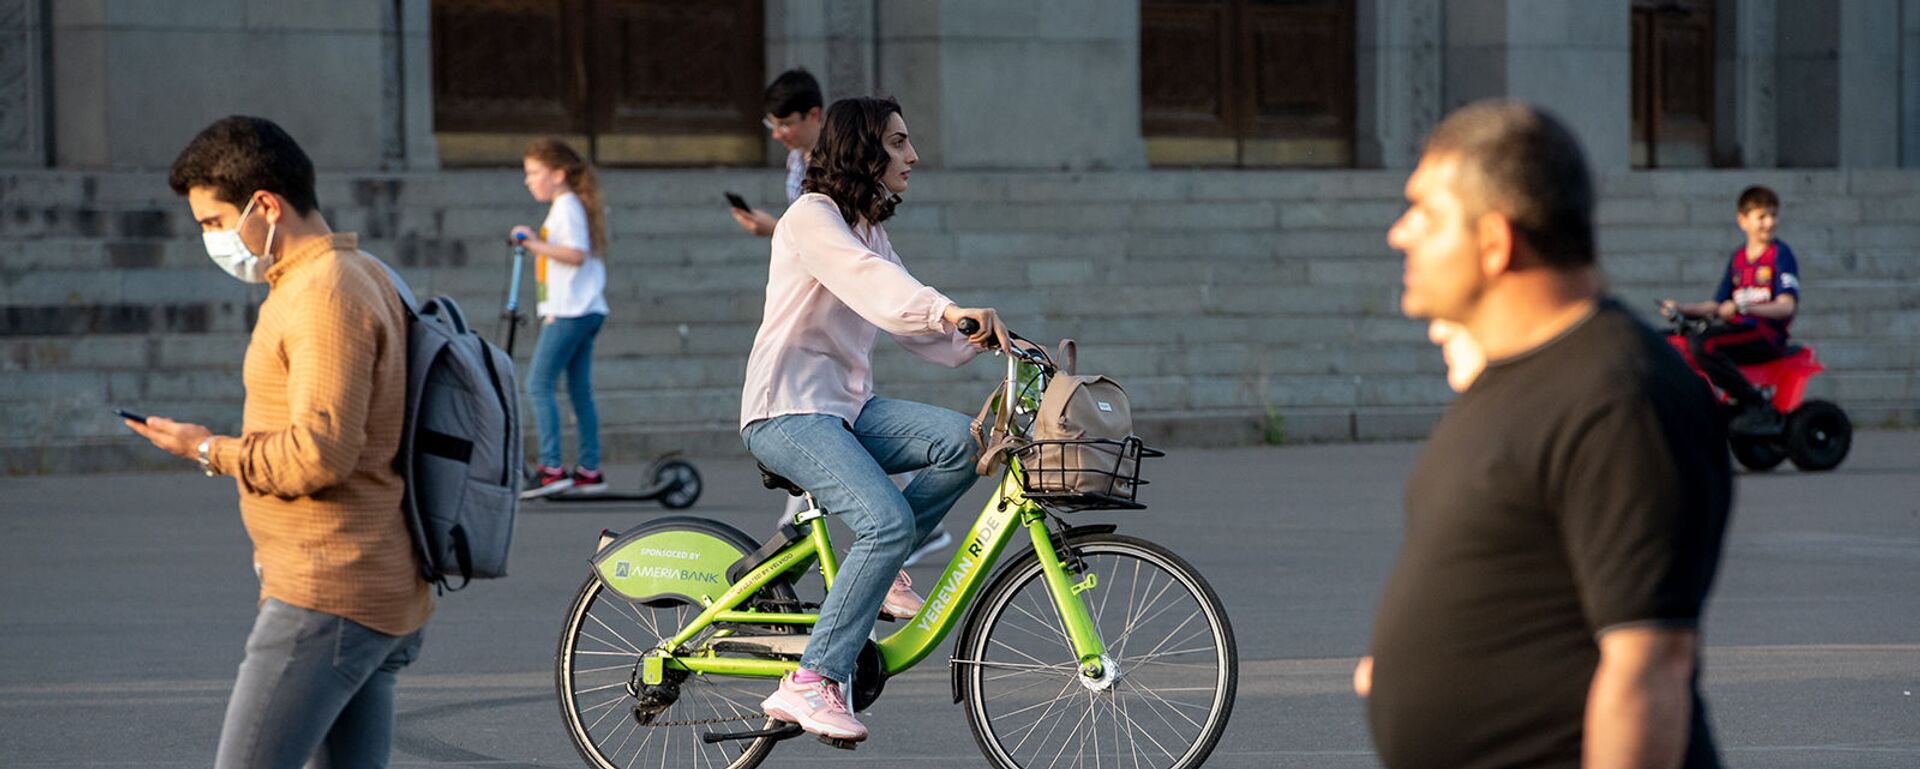 Девушка катается на велосипеде Yerevan Ride - Sputnik Արմենիա, 1920, 13.05.2021